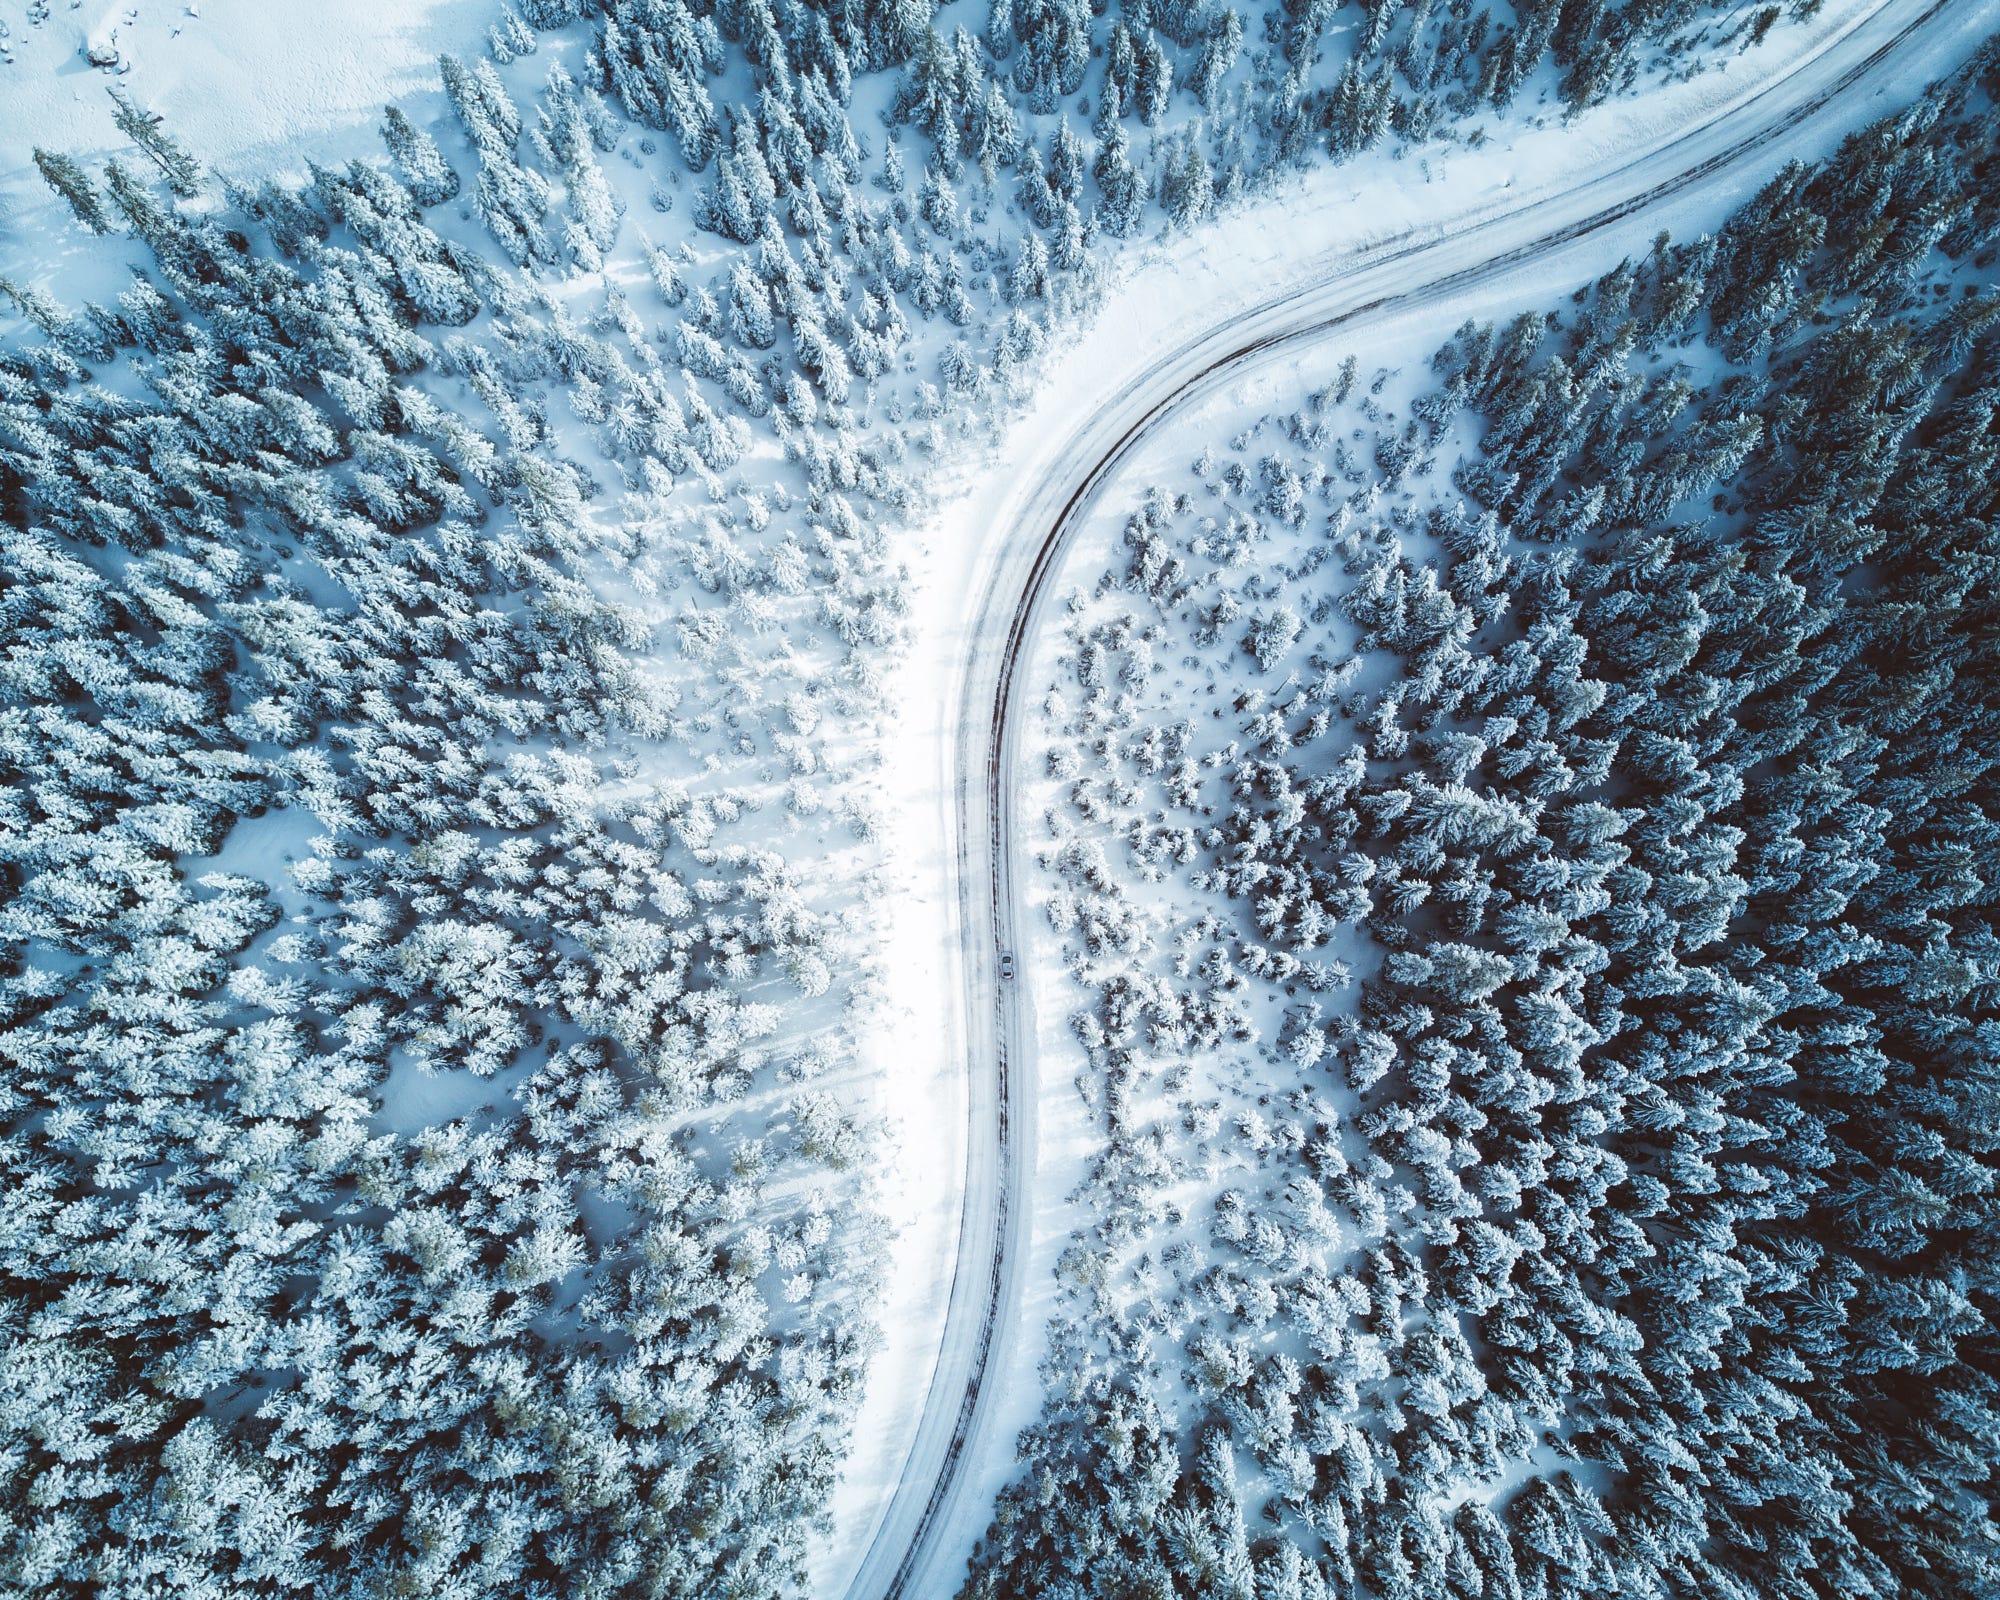 Snowy drive in Oregon